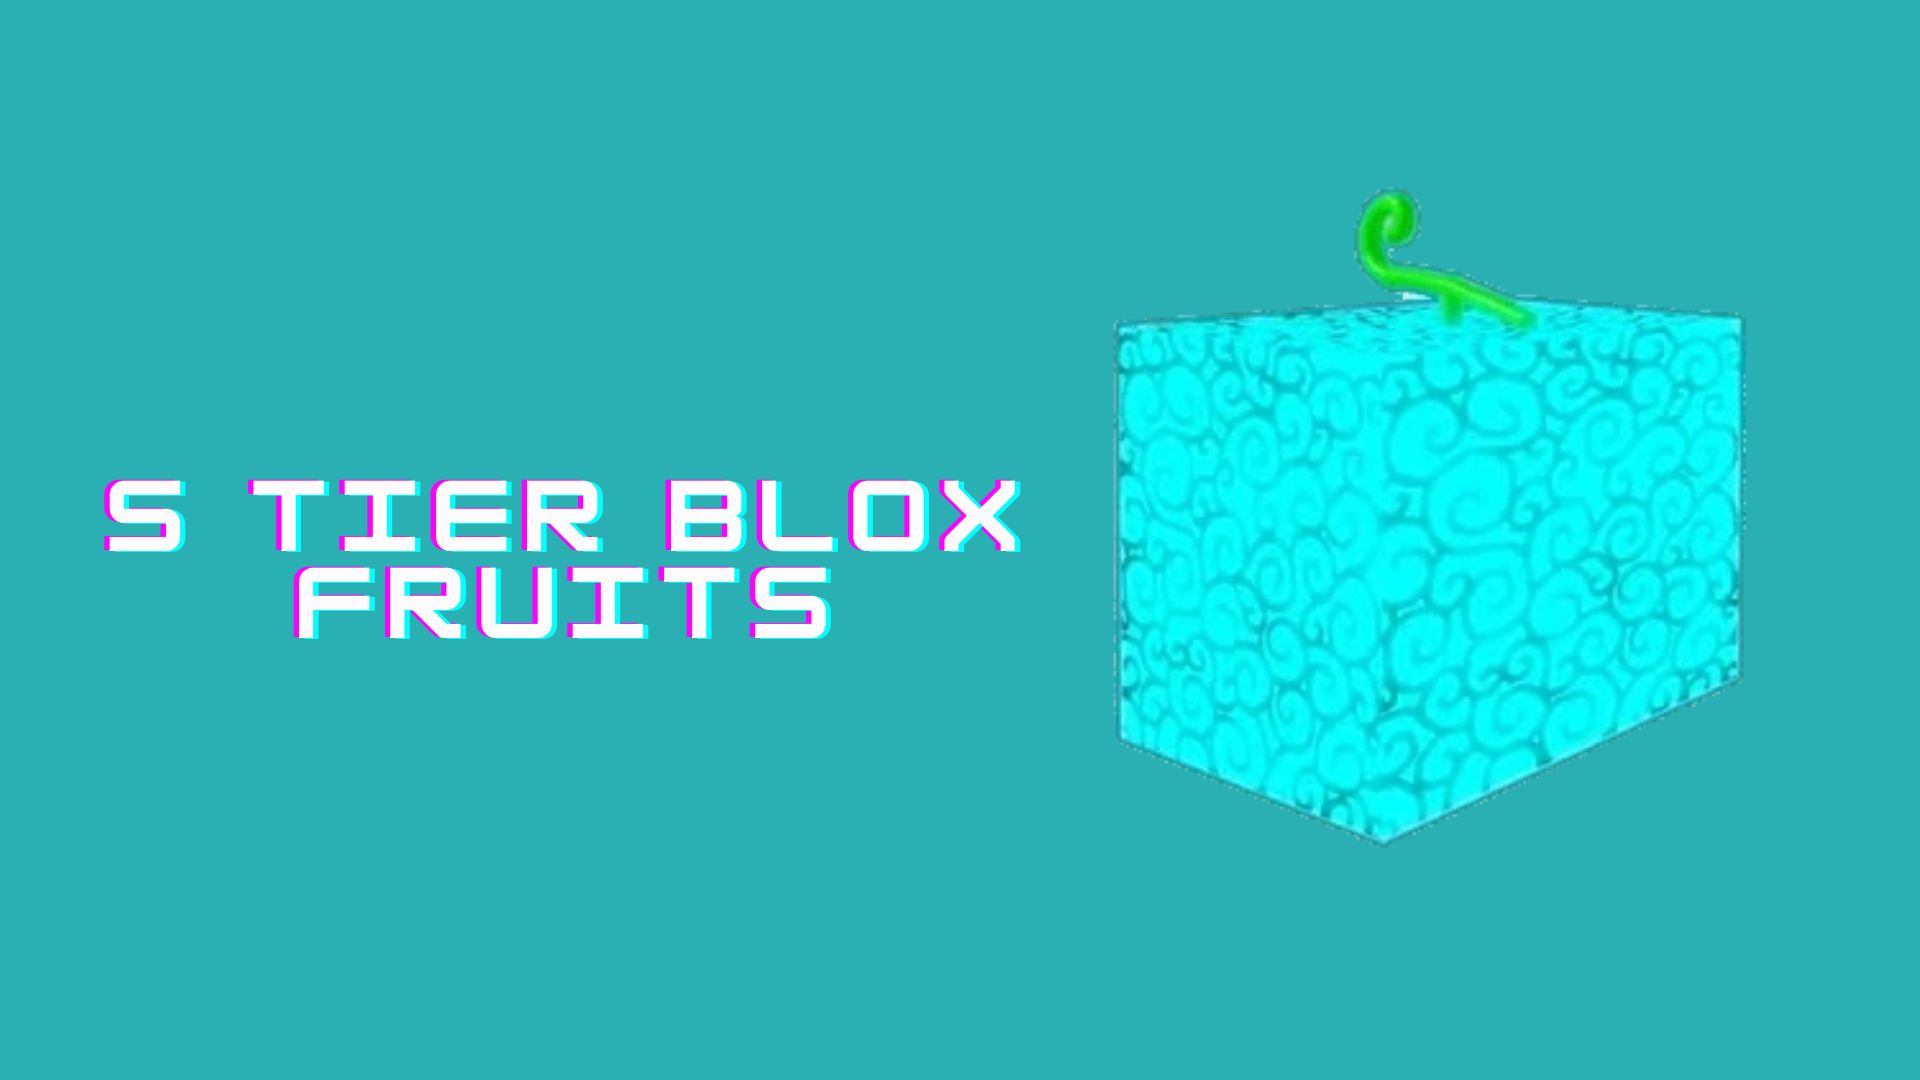 Blox Fruits Update 18 ALL DEVIL FRUITS Tier List! (CHRISTMAS UPDATE)  (Spirit Blizzard Portal Fruit) 